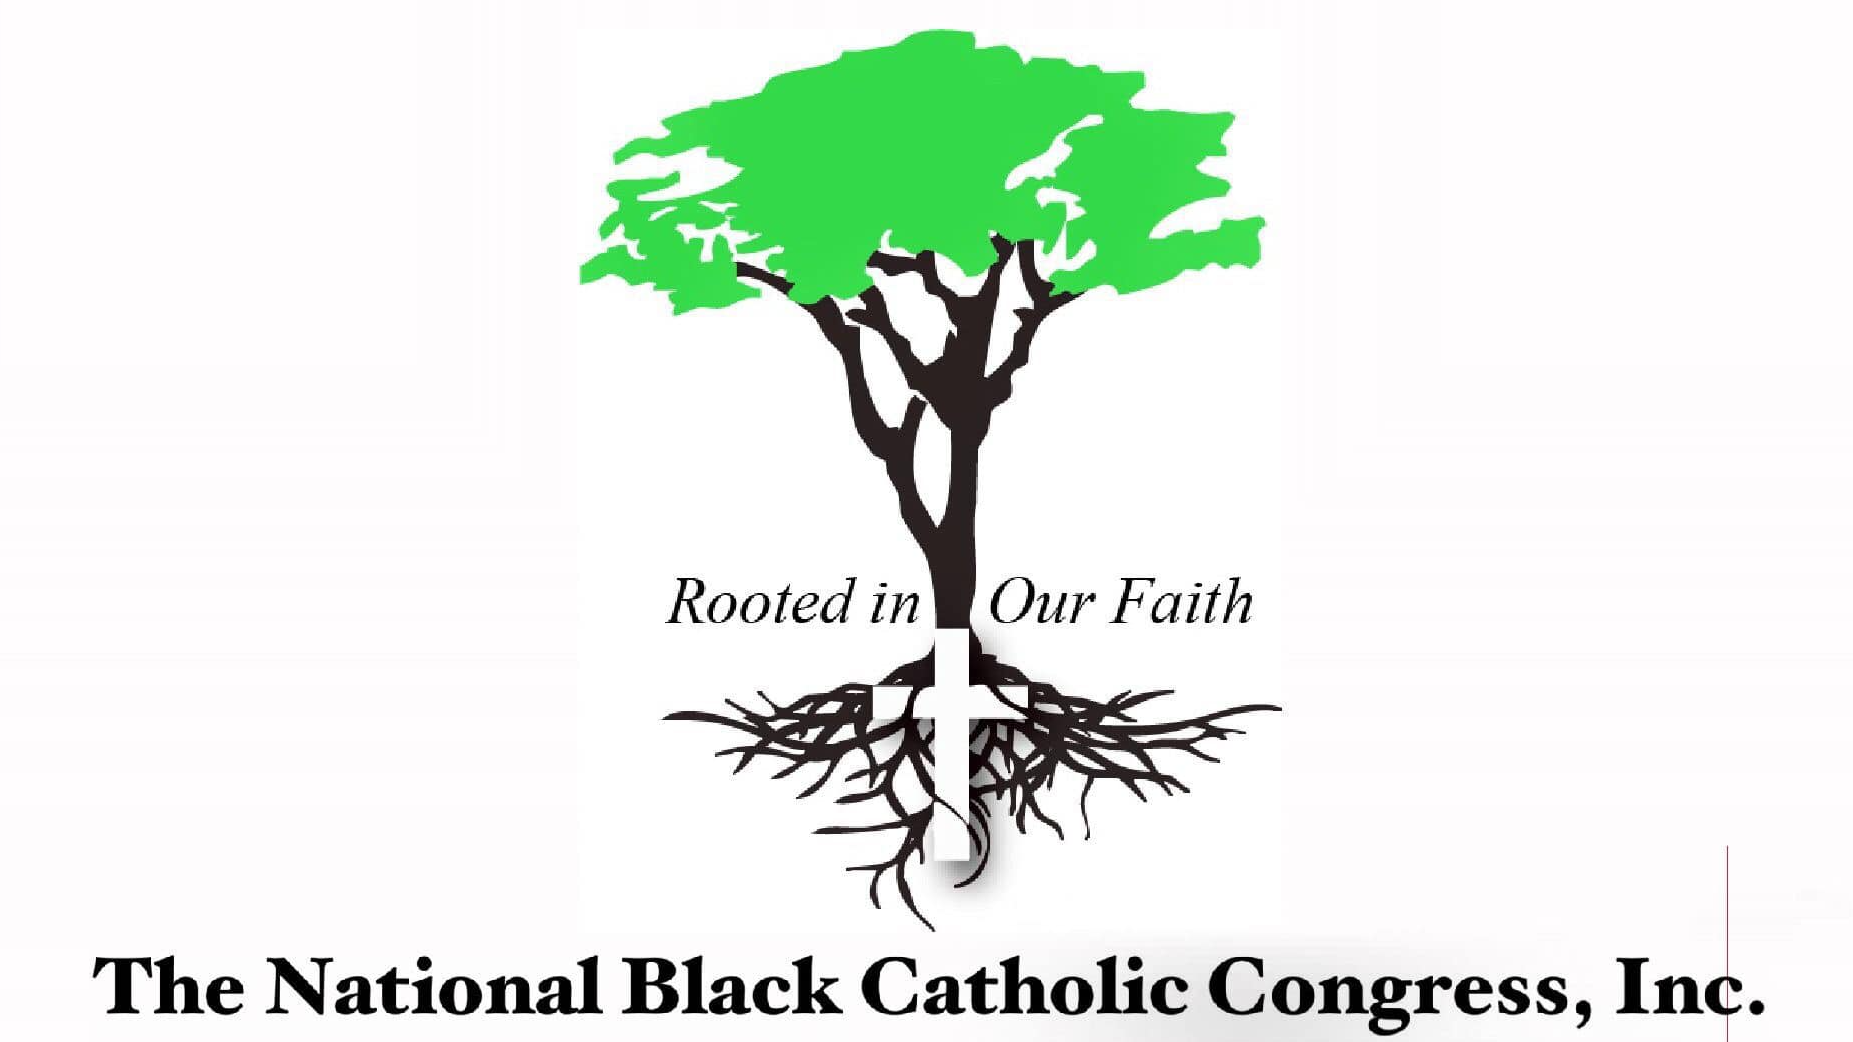 National Black Catholic Congress gathering delayed to 2023